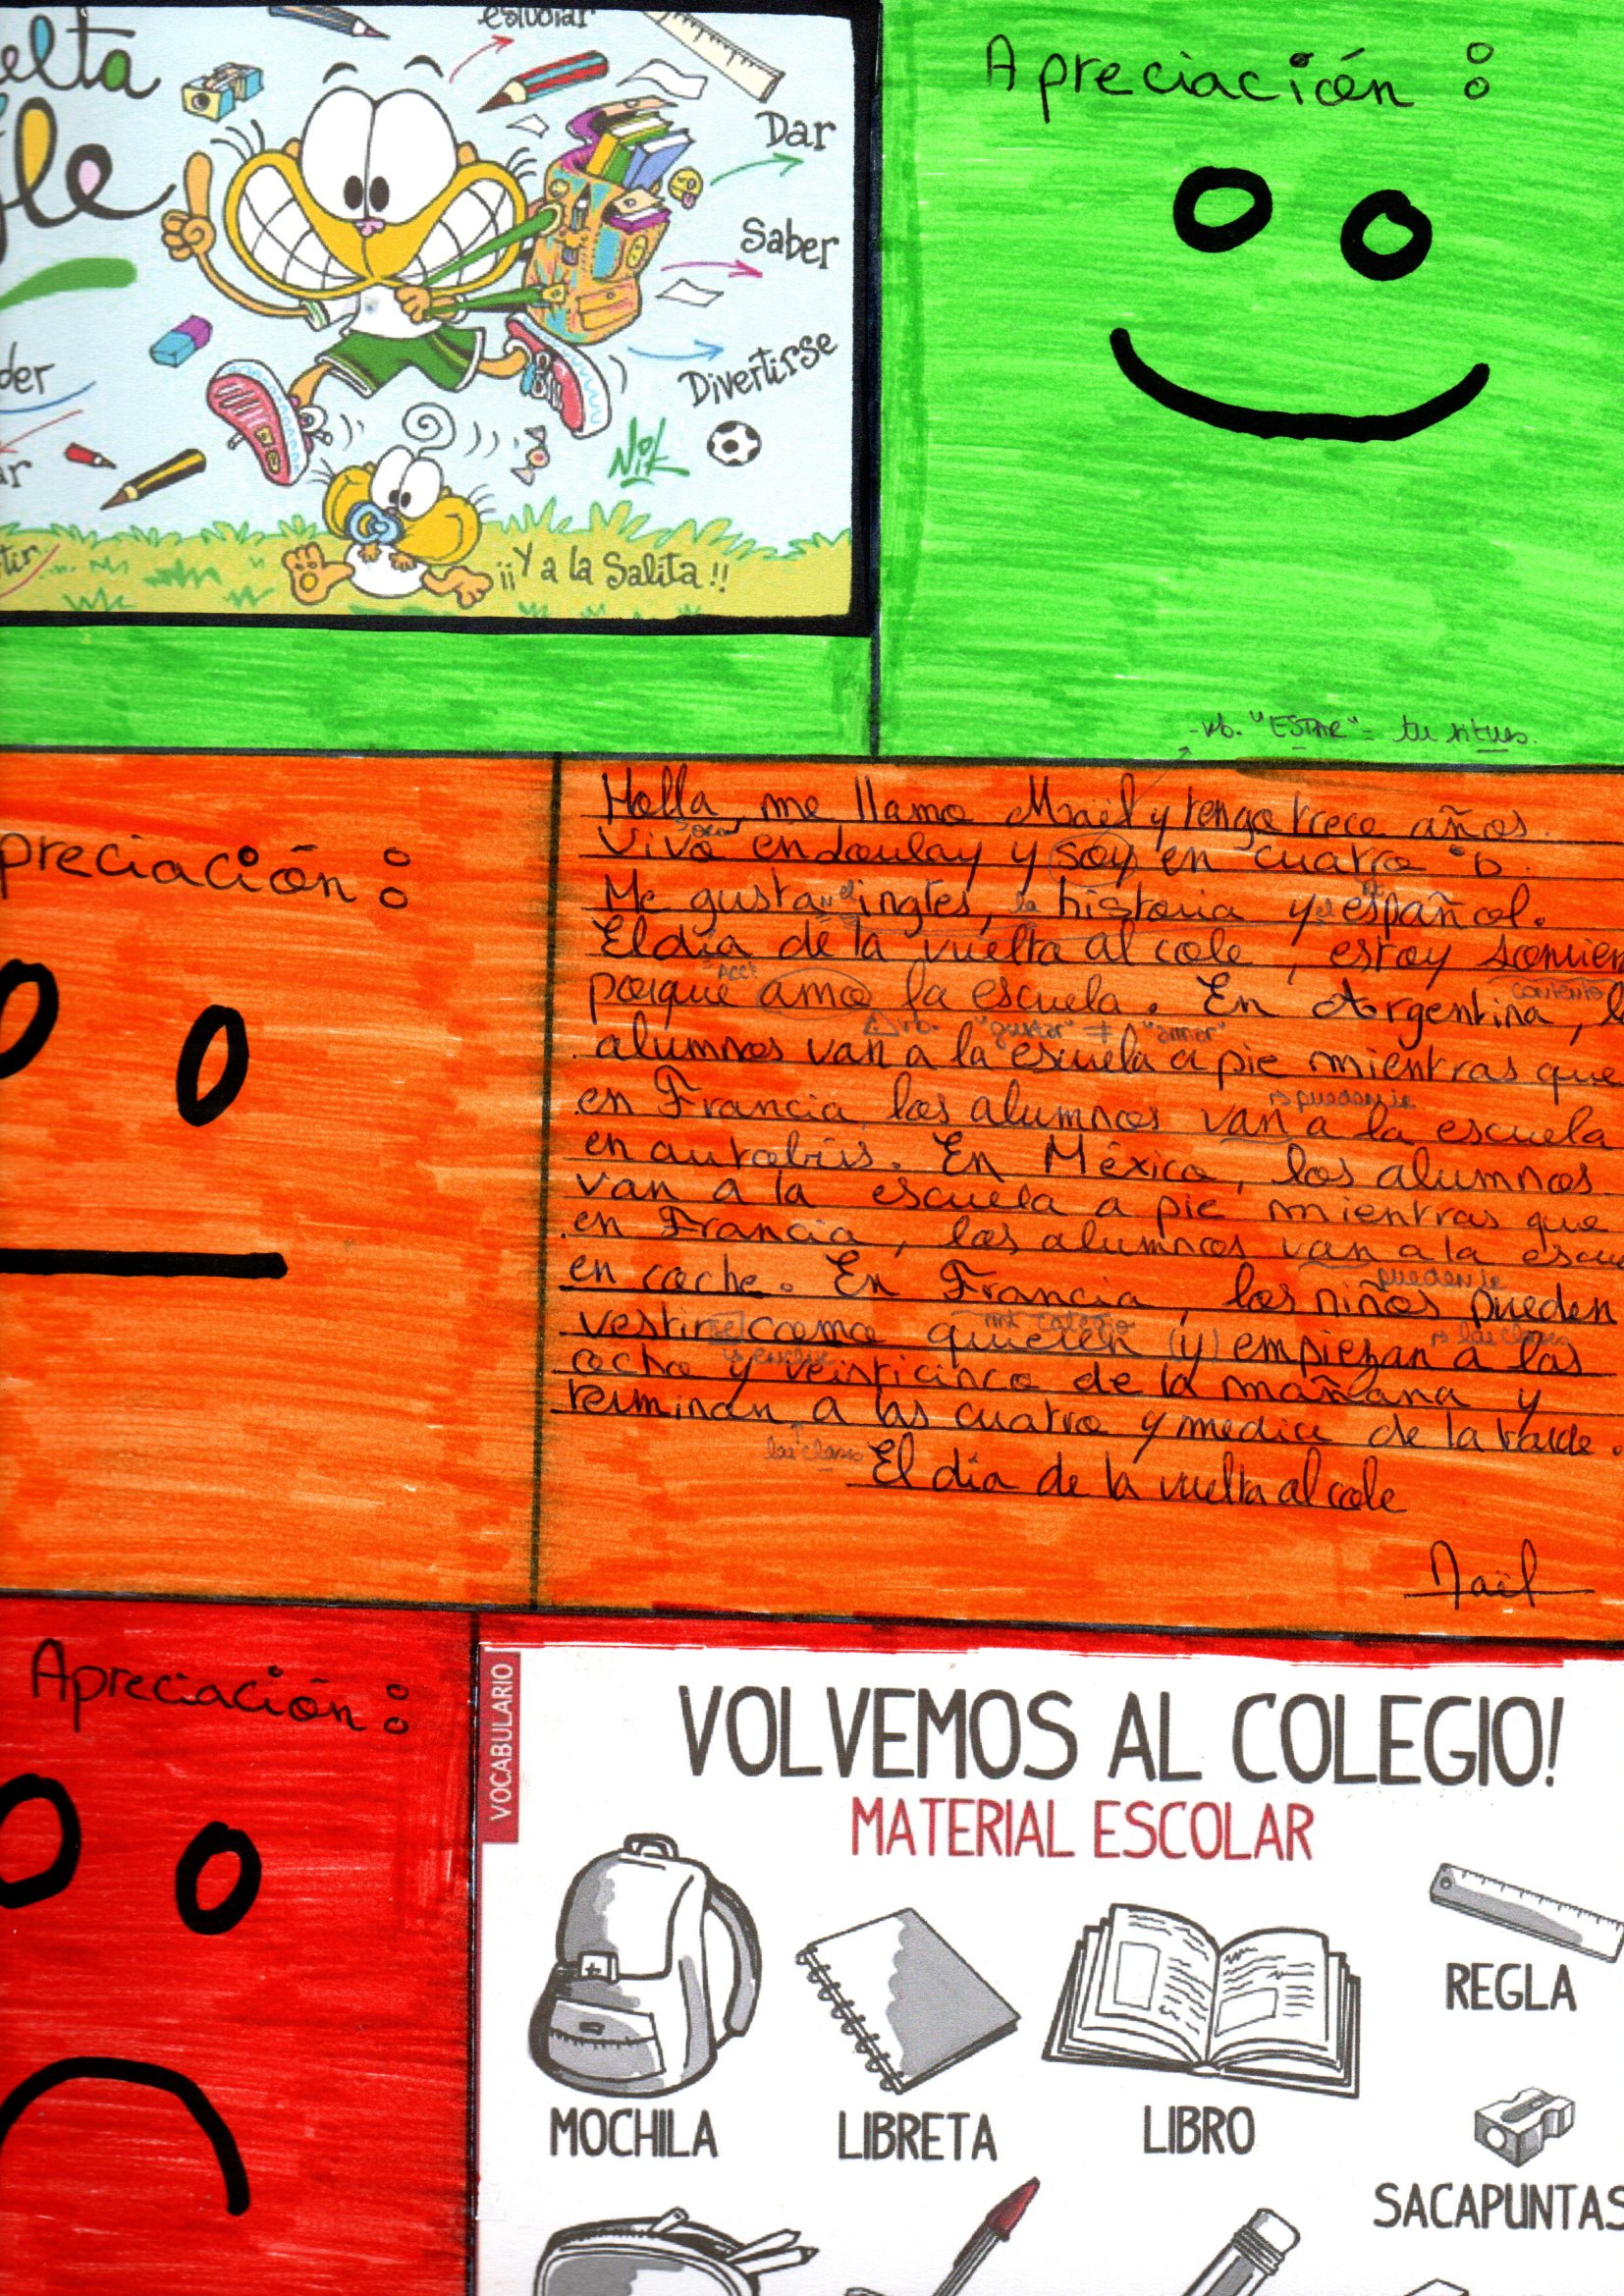 SEQ Educación on X: Mochilas felices, campaña de útiles escolares